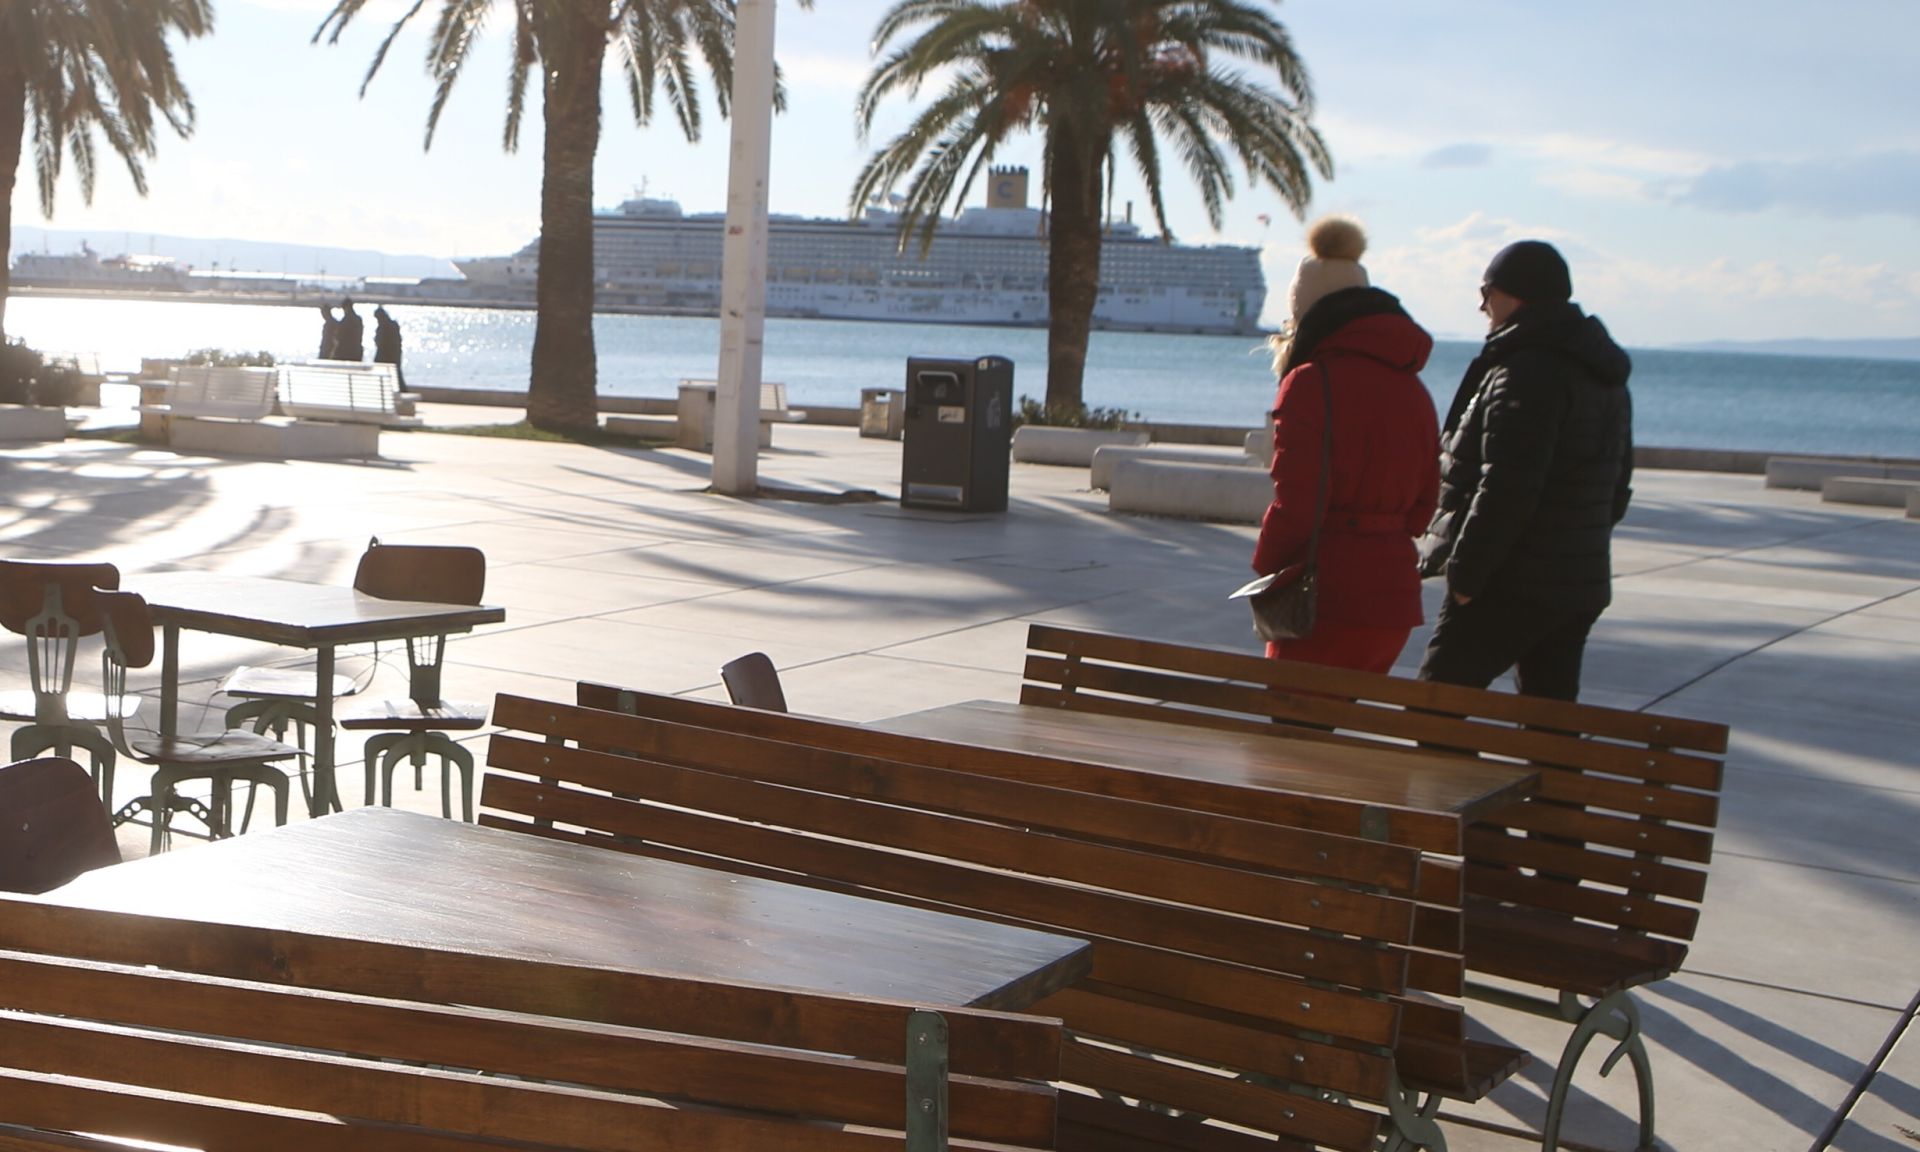 Split: Zbog zahlađenja tek malobrojni građani uživaju na rivi 04.01.2019., Split - Zbog zahladjenja tek rijetki prijepodne uzivaju na rivi. Photo: Ivo Cagalj/PIXSELL